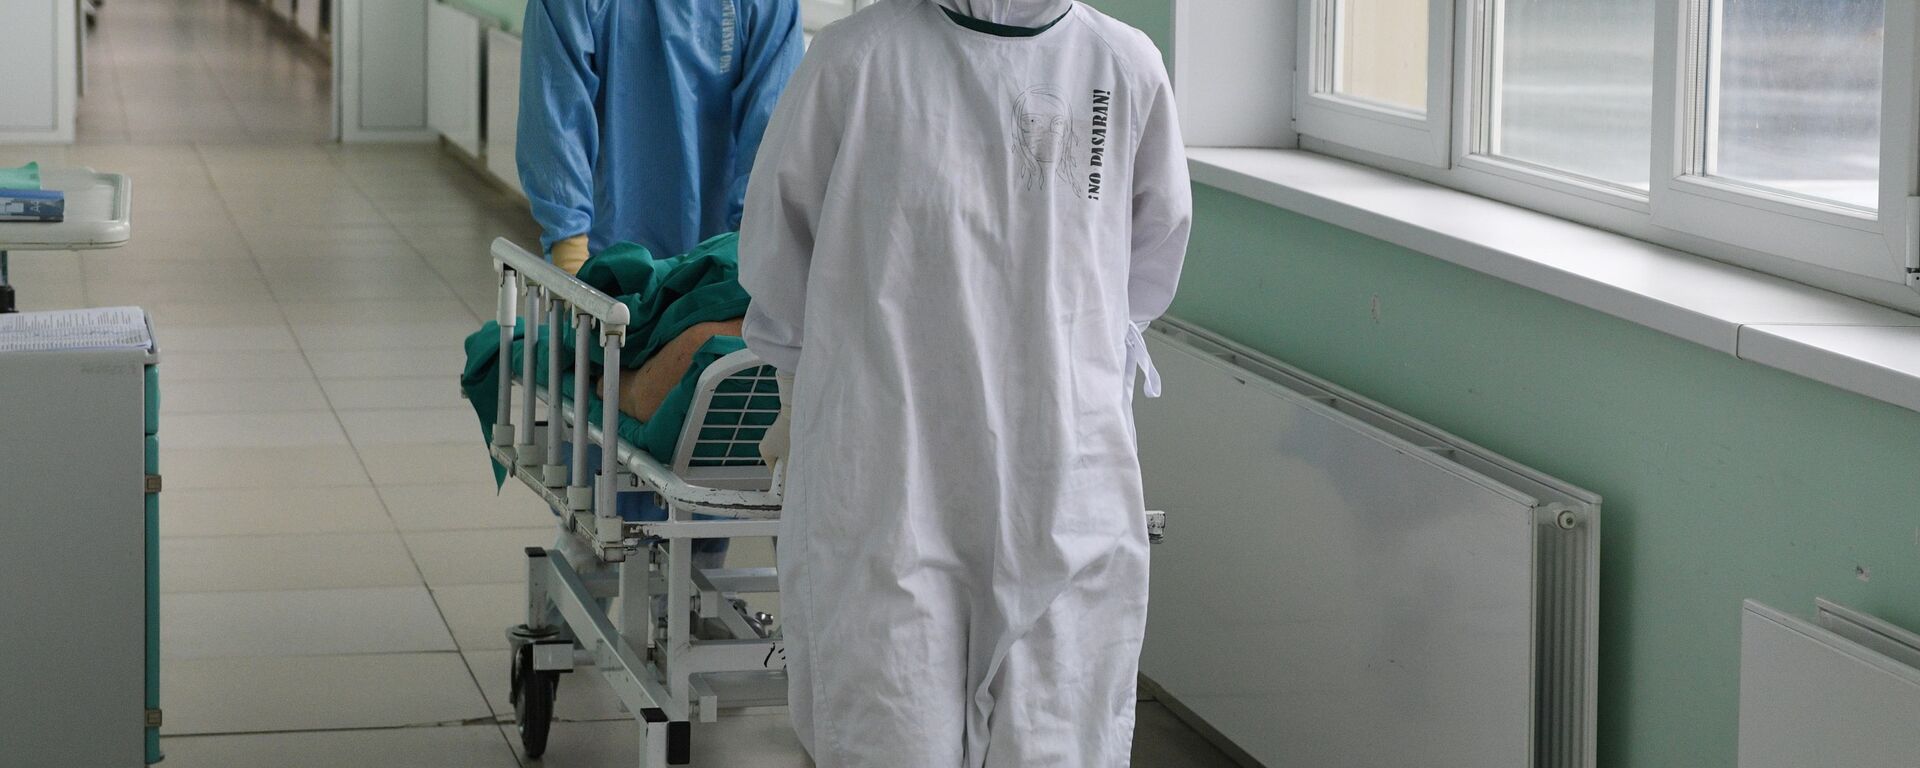 Медицинские работники везут пациента в ковид-госпитале - Sputnik Таджикистан, 1920, 14.06.2021